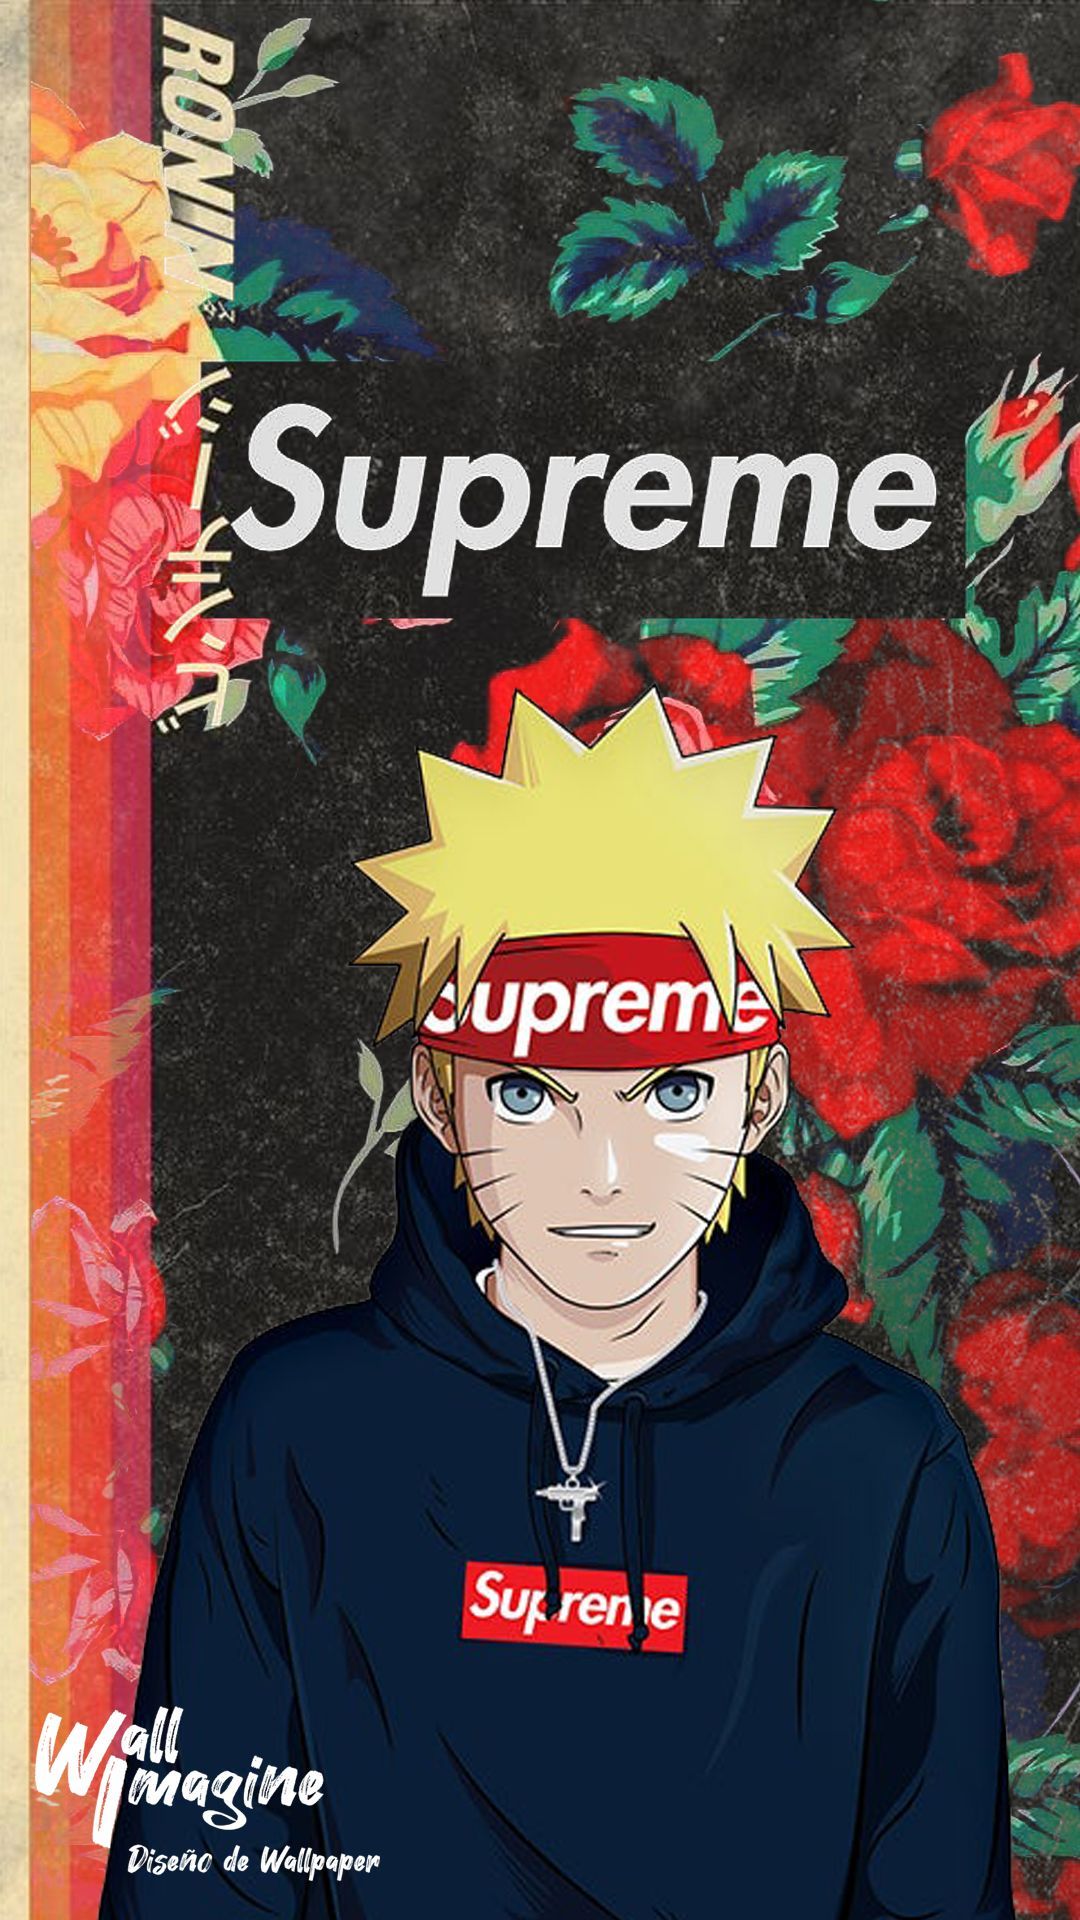 Naruto Supreme. Naruto wallpaper iphone, Naruto uzumaki art, Wallpaper naruto shippuden